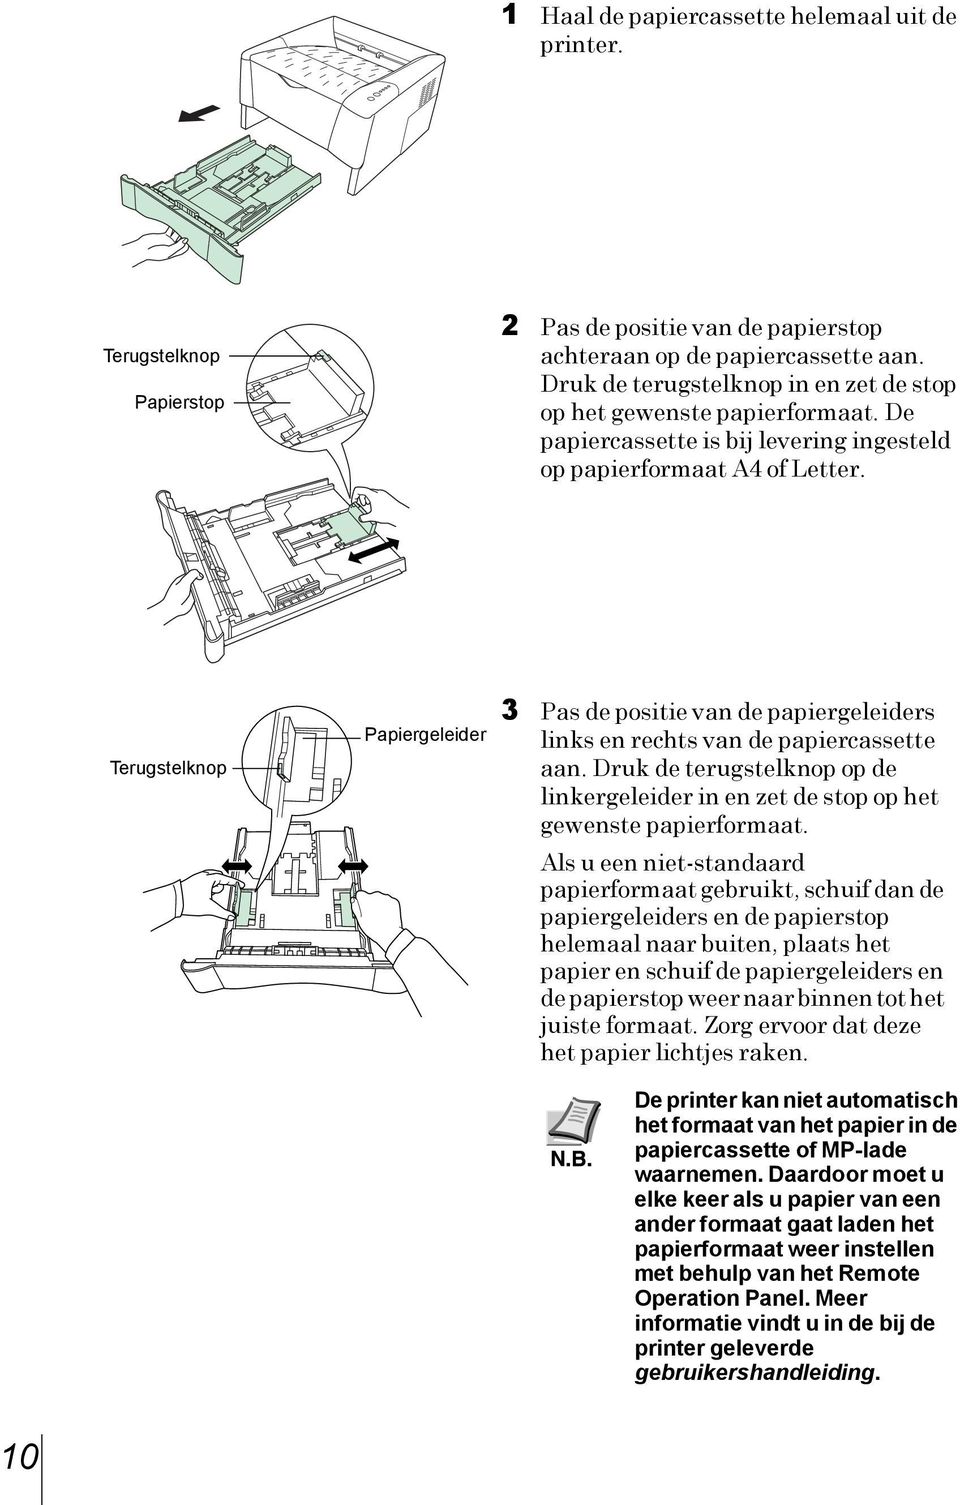 Terugstelknop Papiergeleider 3 Pas de positie van de papiergeleiders links en rechts van de papiercassette aan.